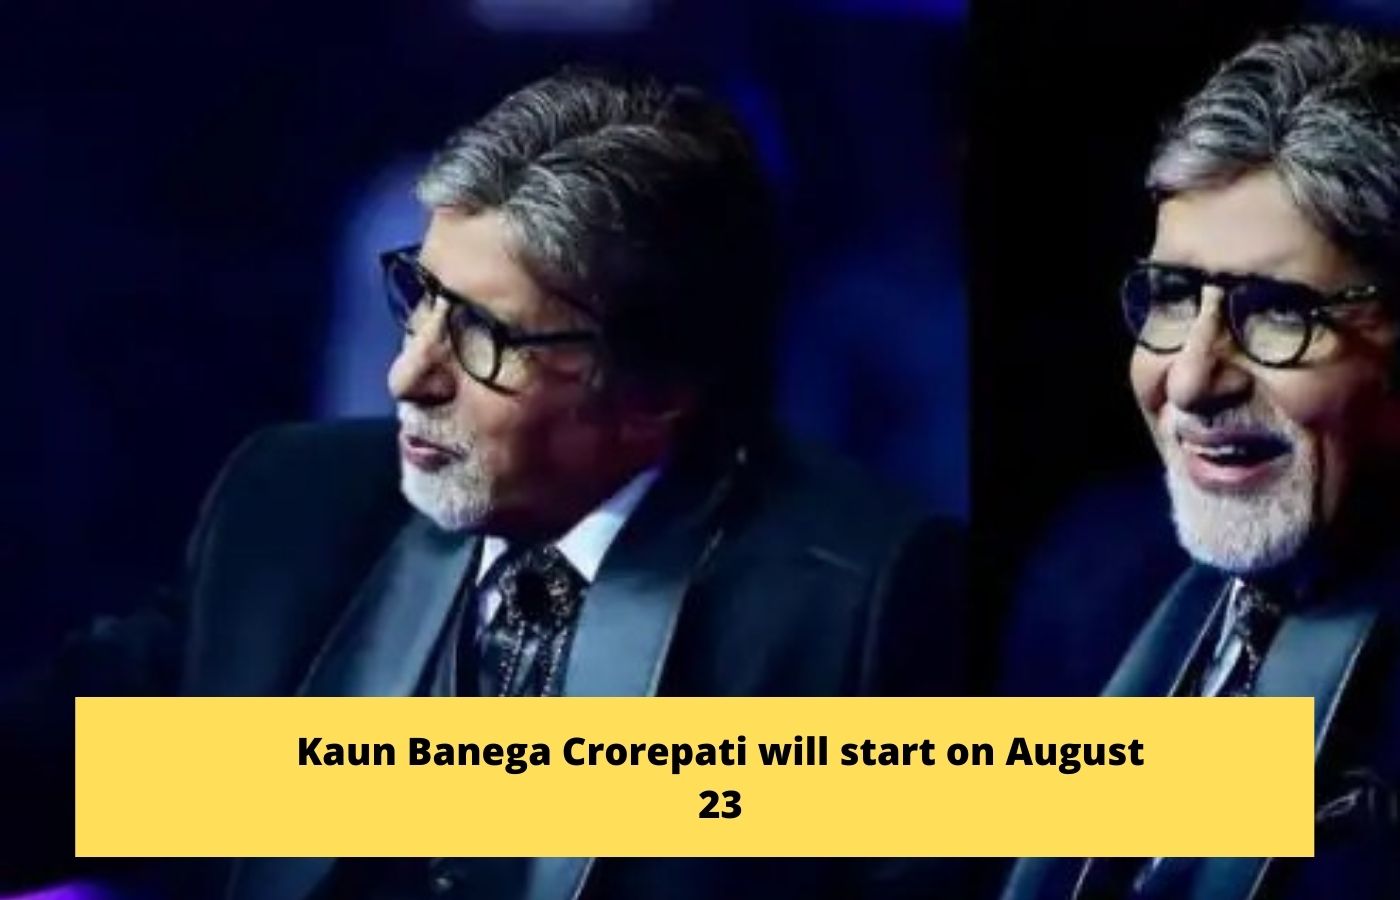 Kaun Banega Crorepati will start on August 23